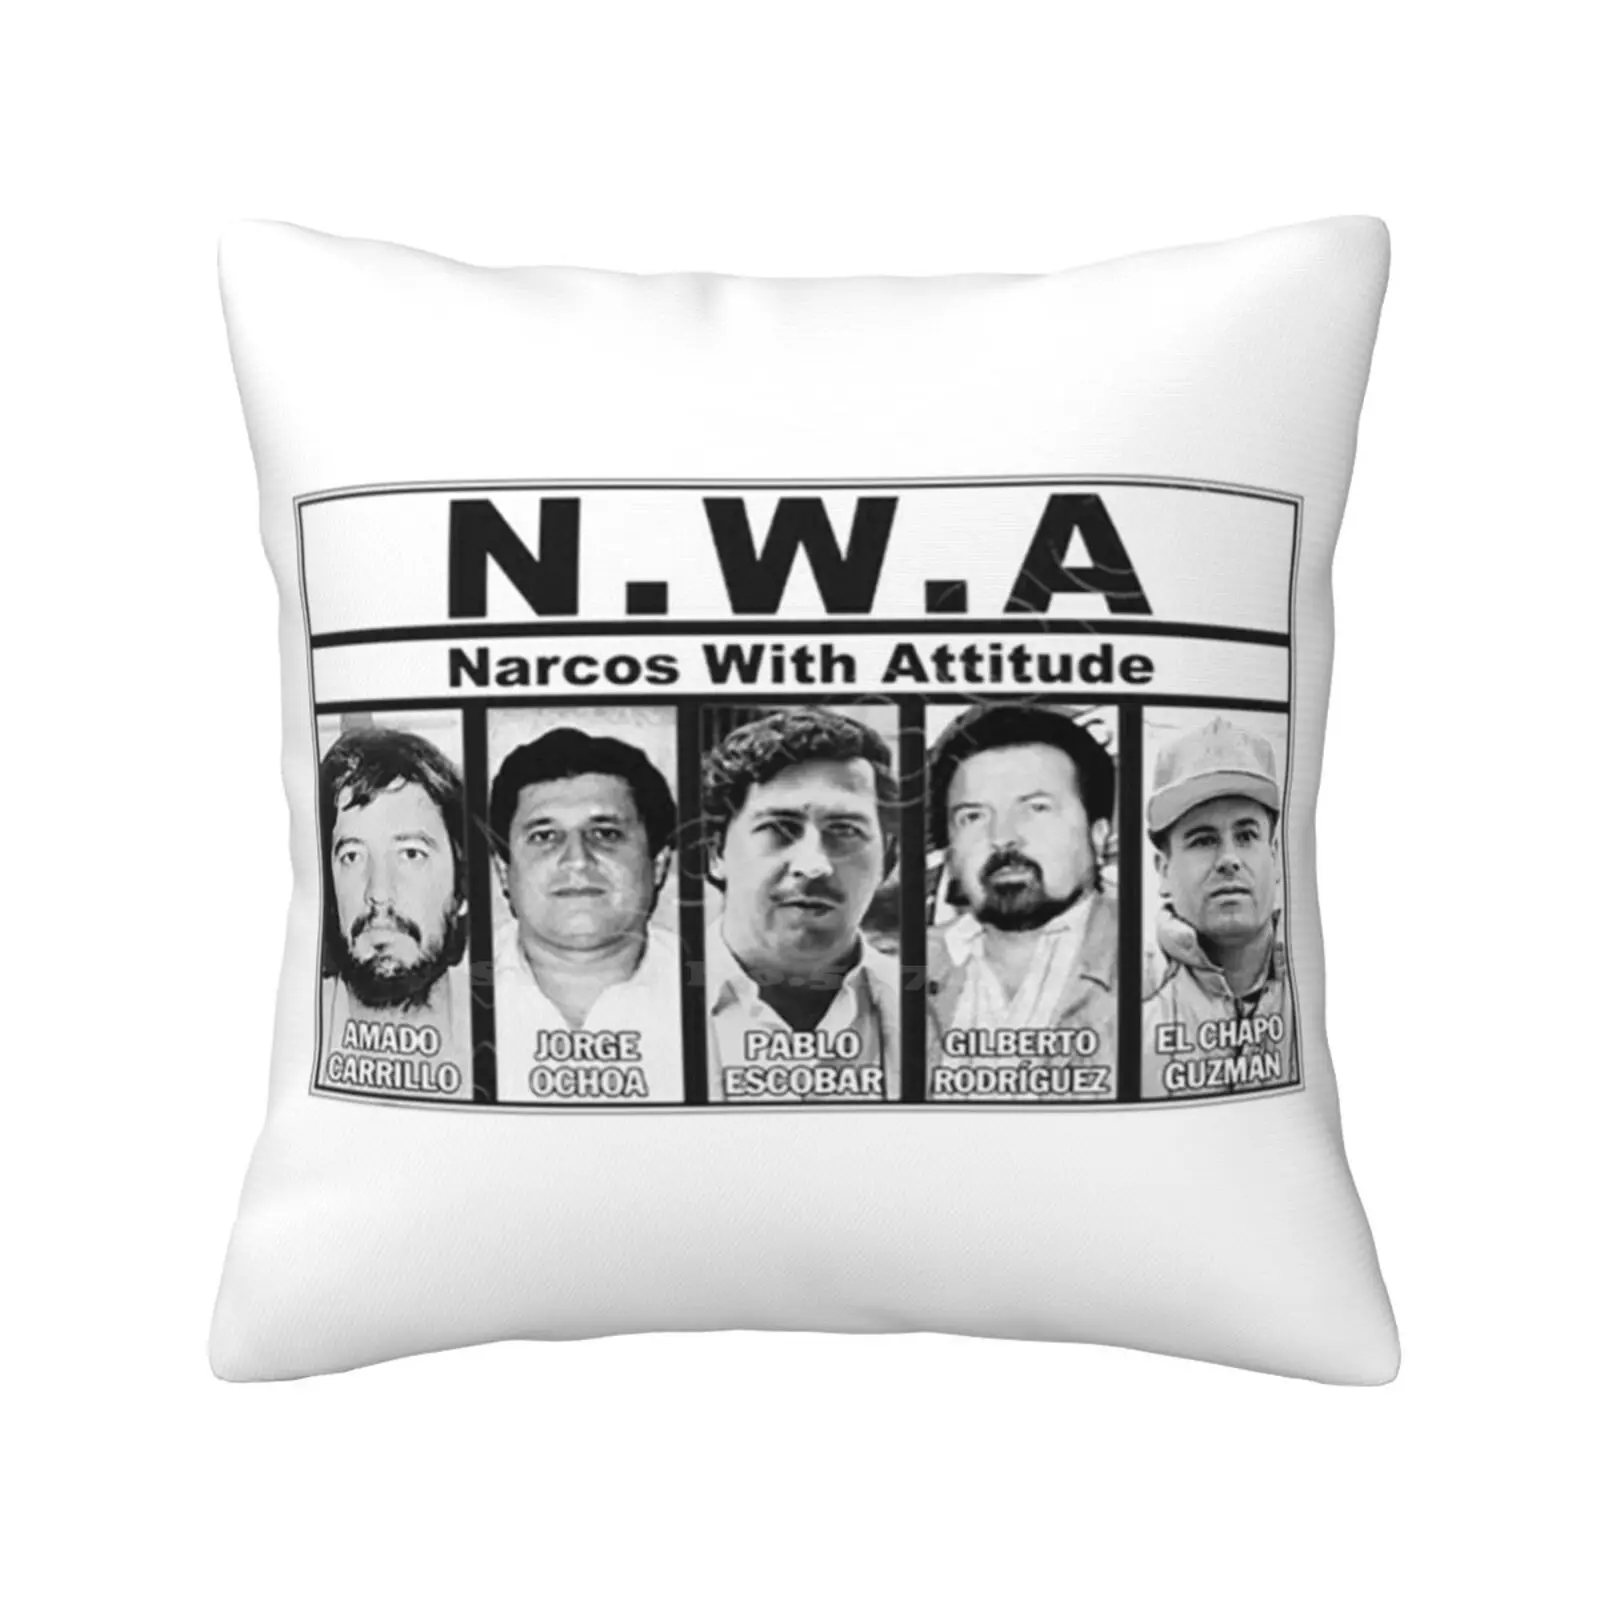 

Подушки Nwa-с отношением, домашнее украшение для спальни